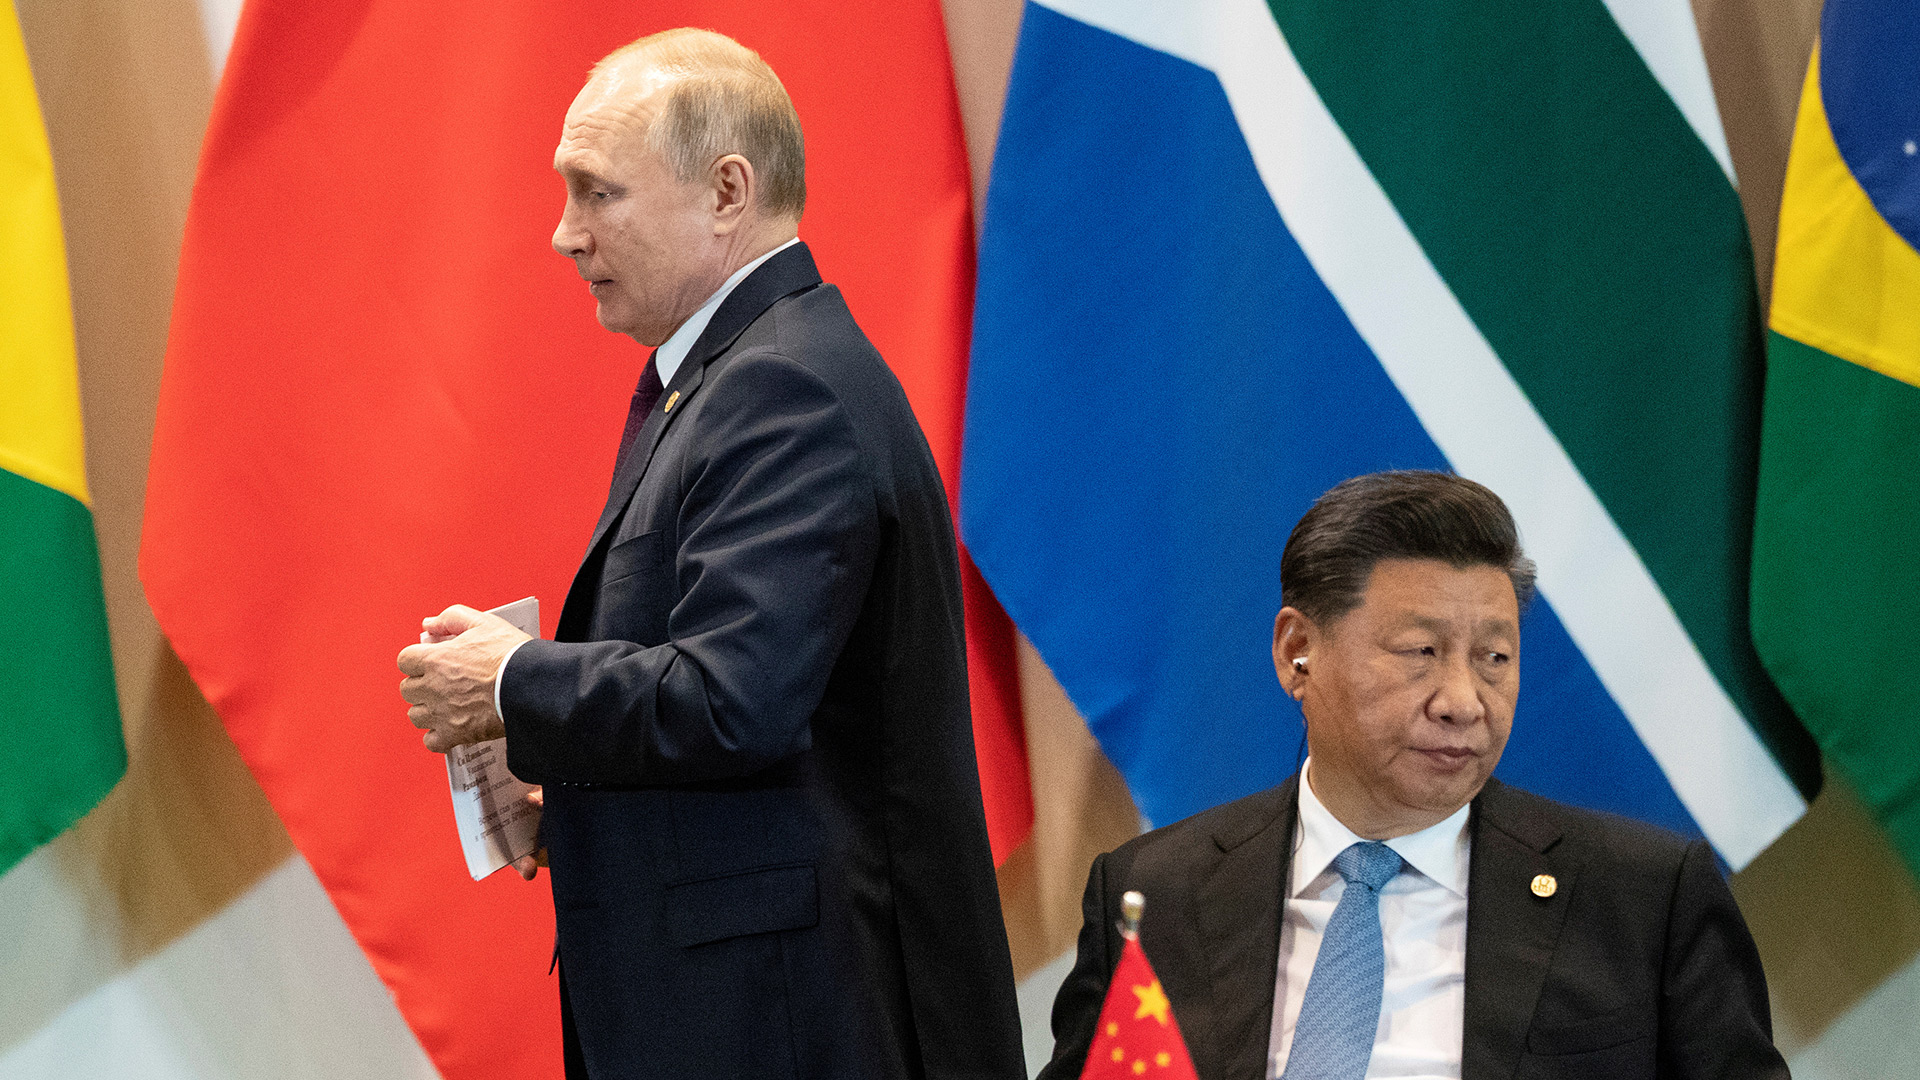 ARCHIVO FOTOGRÁFICO: El presidente de Rusia, Vladimir Putin, y el presidente de China, Xi Jinping, en una cumbre del grupo BRICS en el palacio de Itamaraty en Brasilia el 14 de noviembre de 2019 (Pavel Golovkin/Pool vía REUTERS)